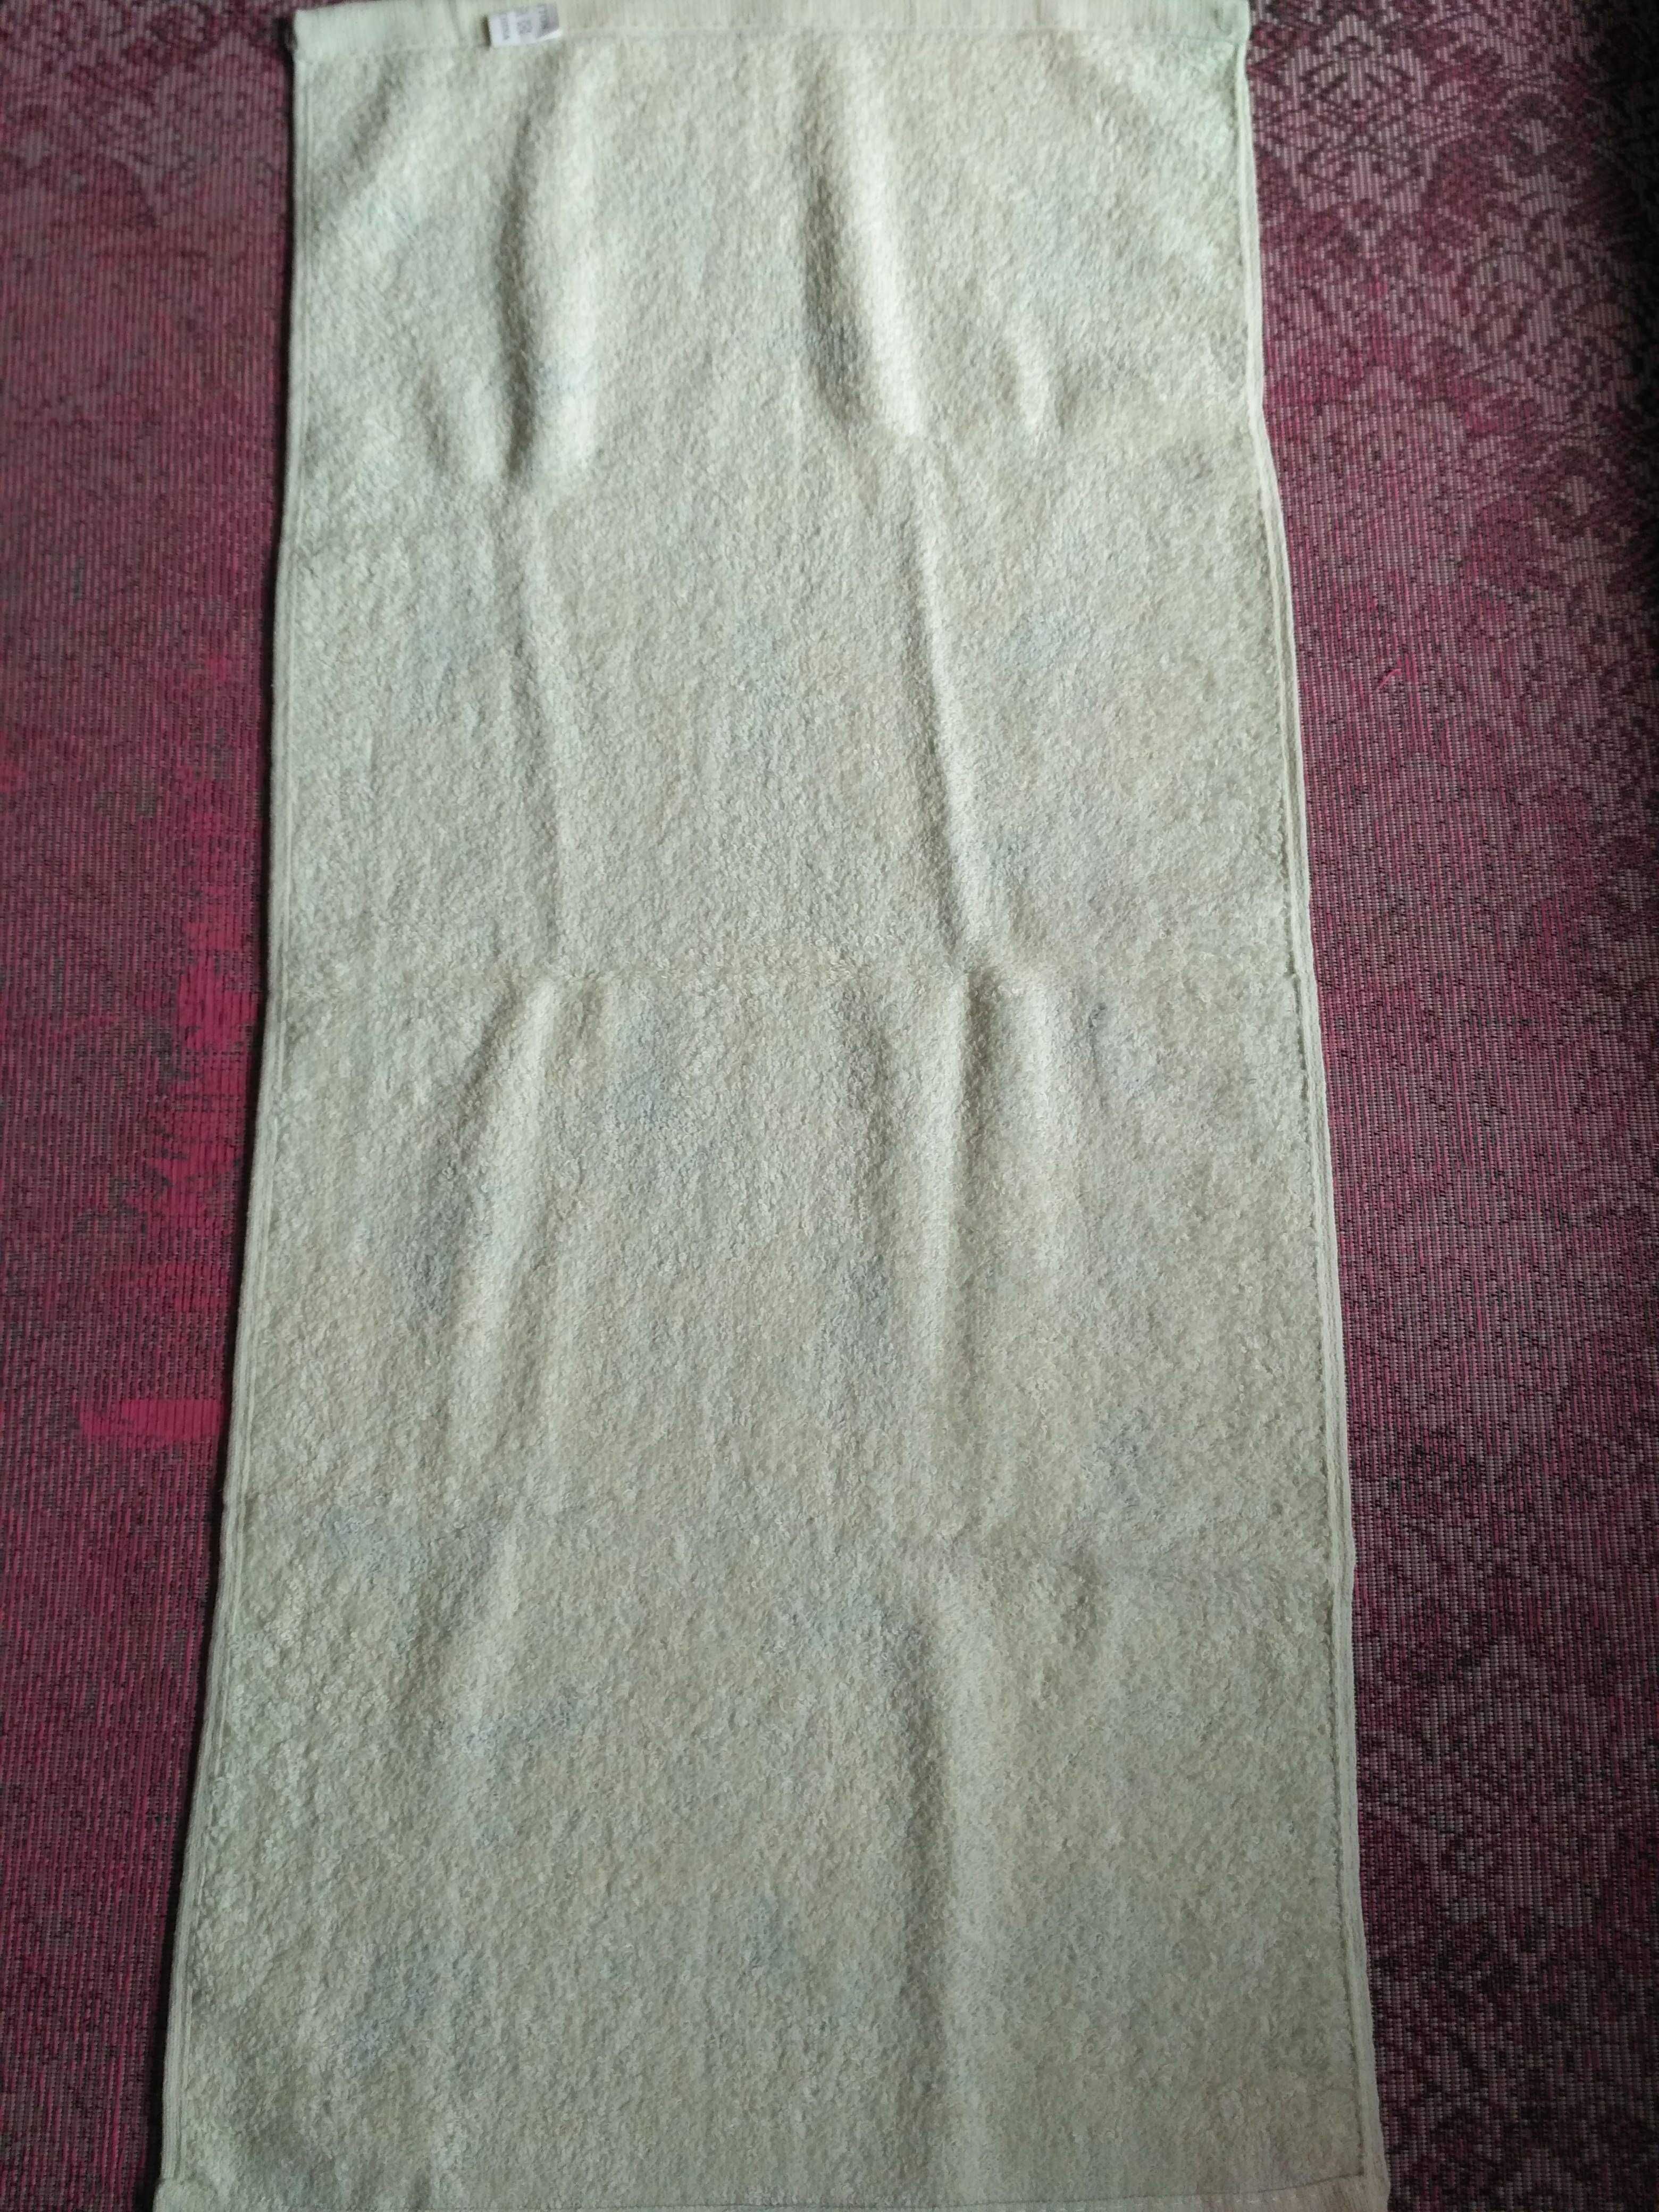 полотенце рушник с синими колокольчиками новое  полотенечко для лица